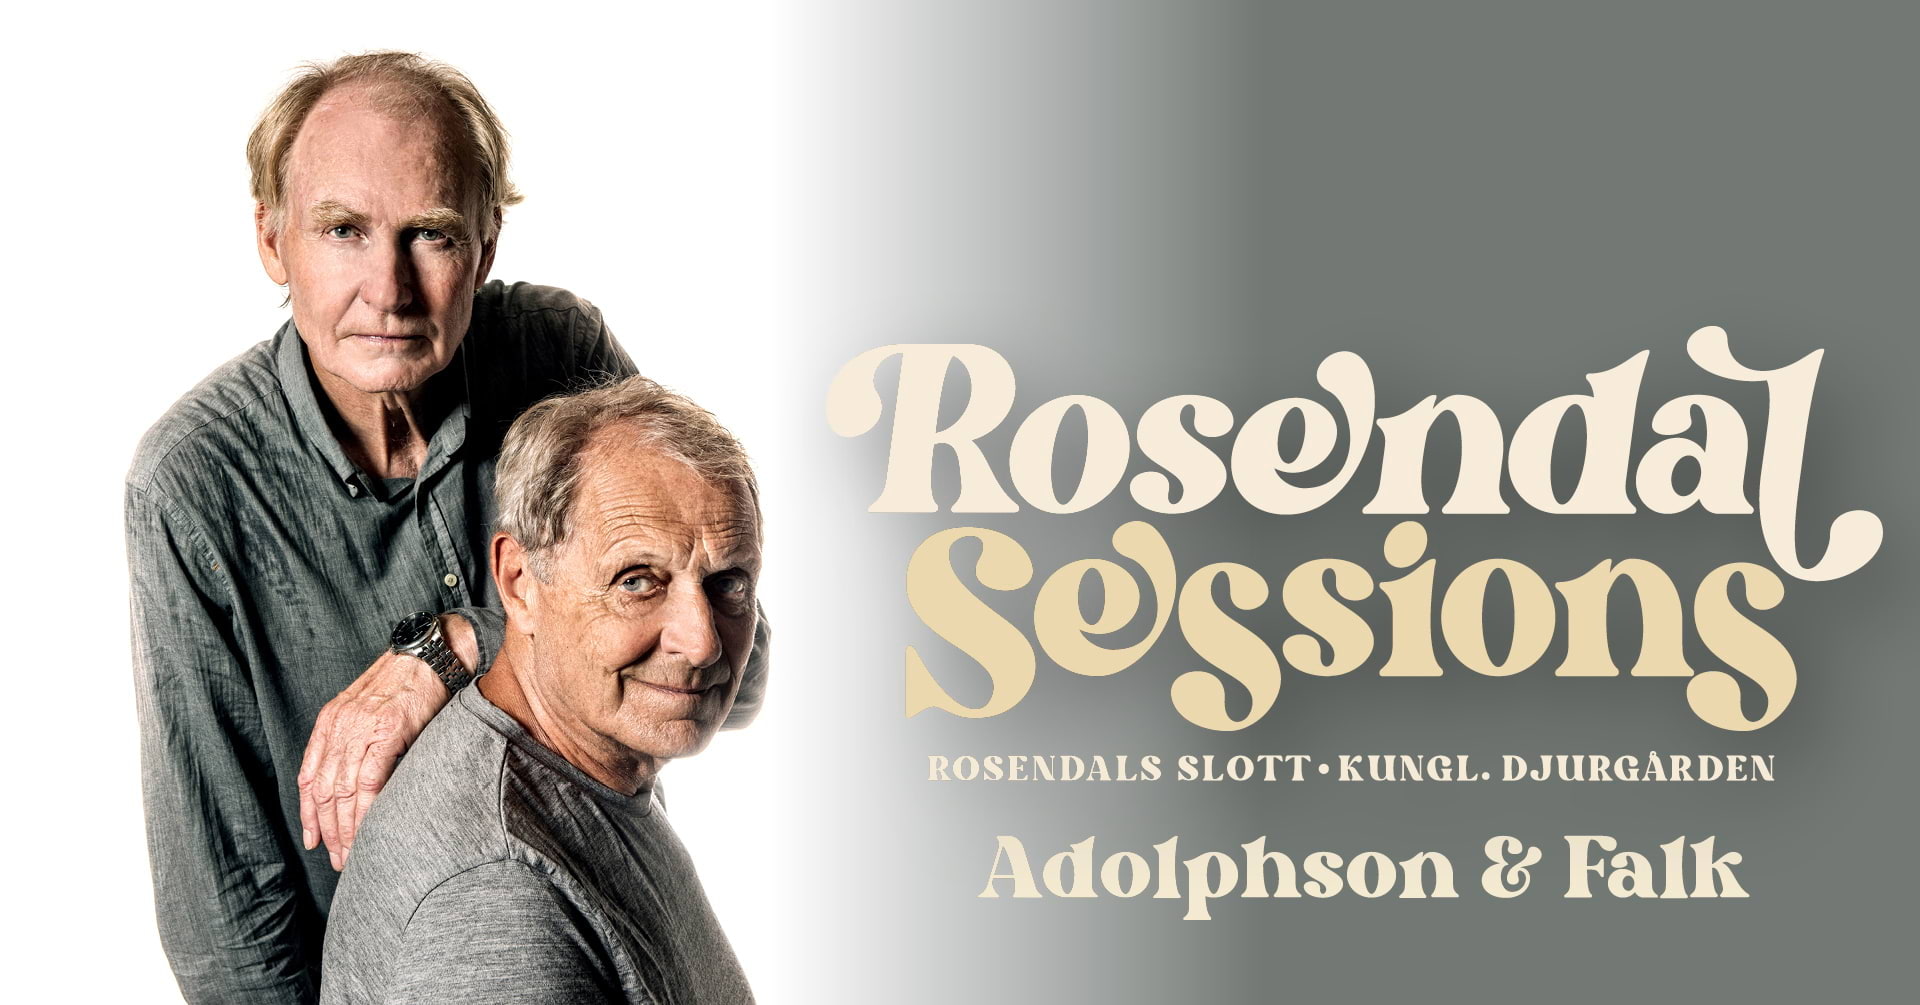 Adolphson & Falk på Rosendal Sessions 2023 | Stockholm, Rosendals Slott